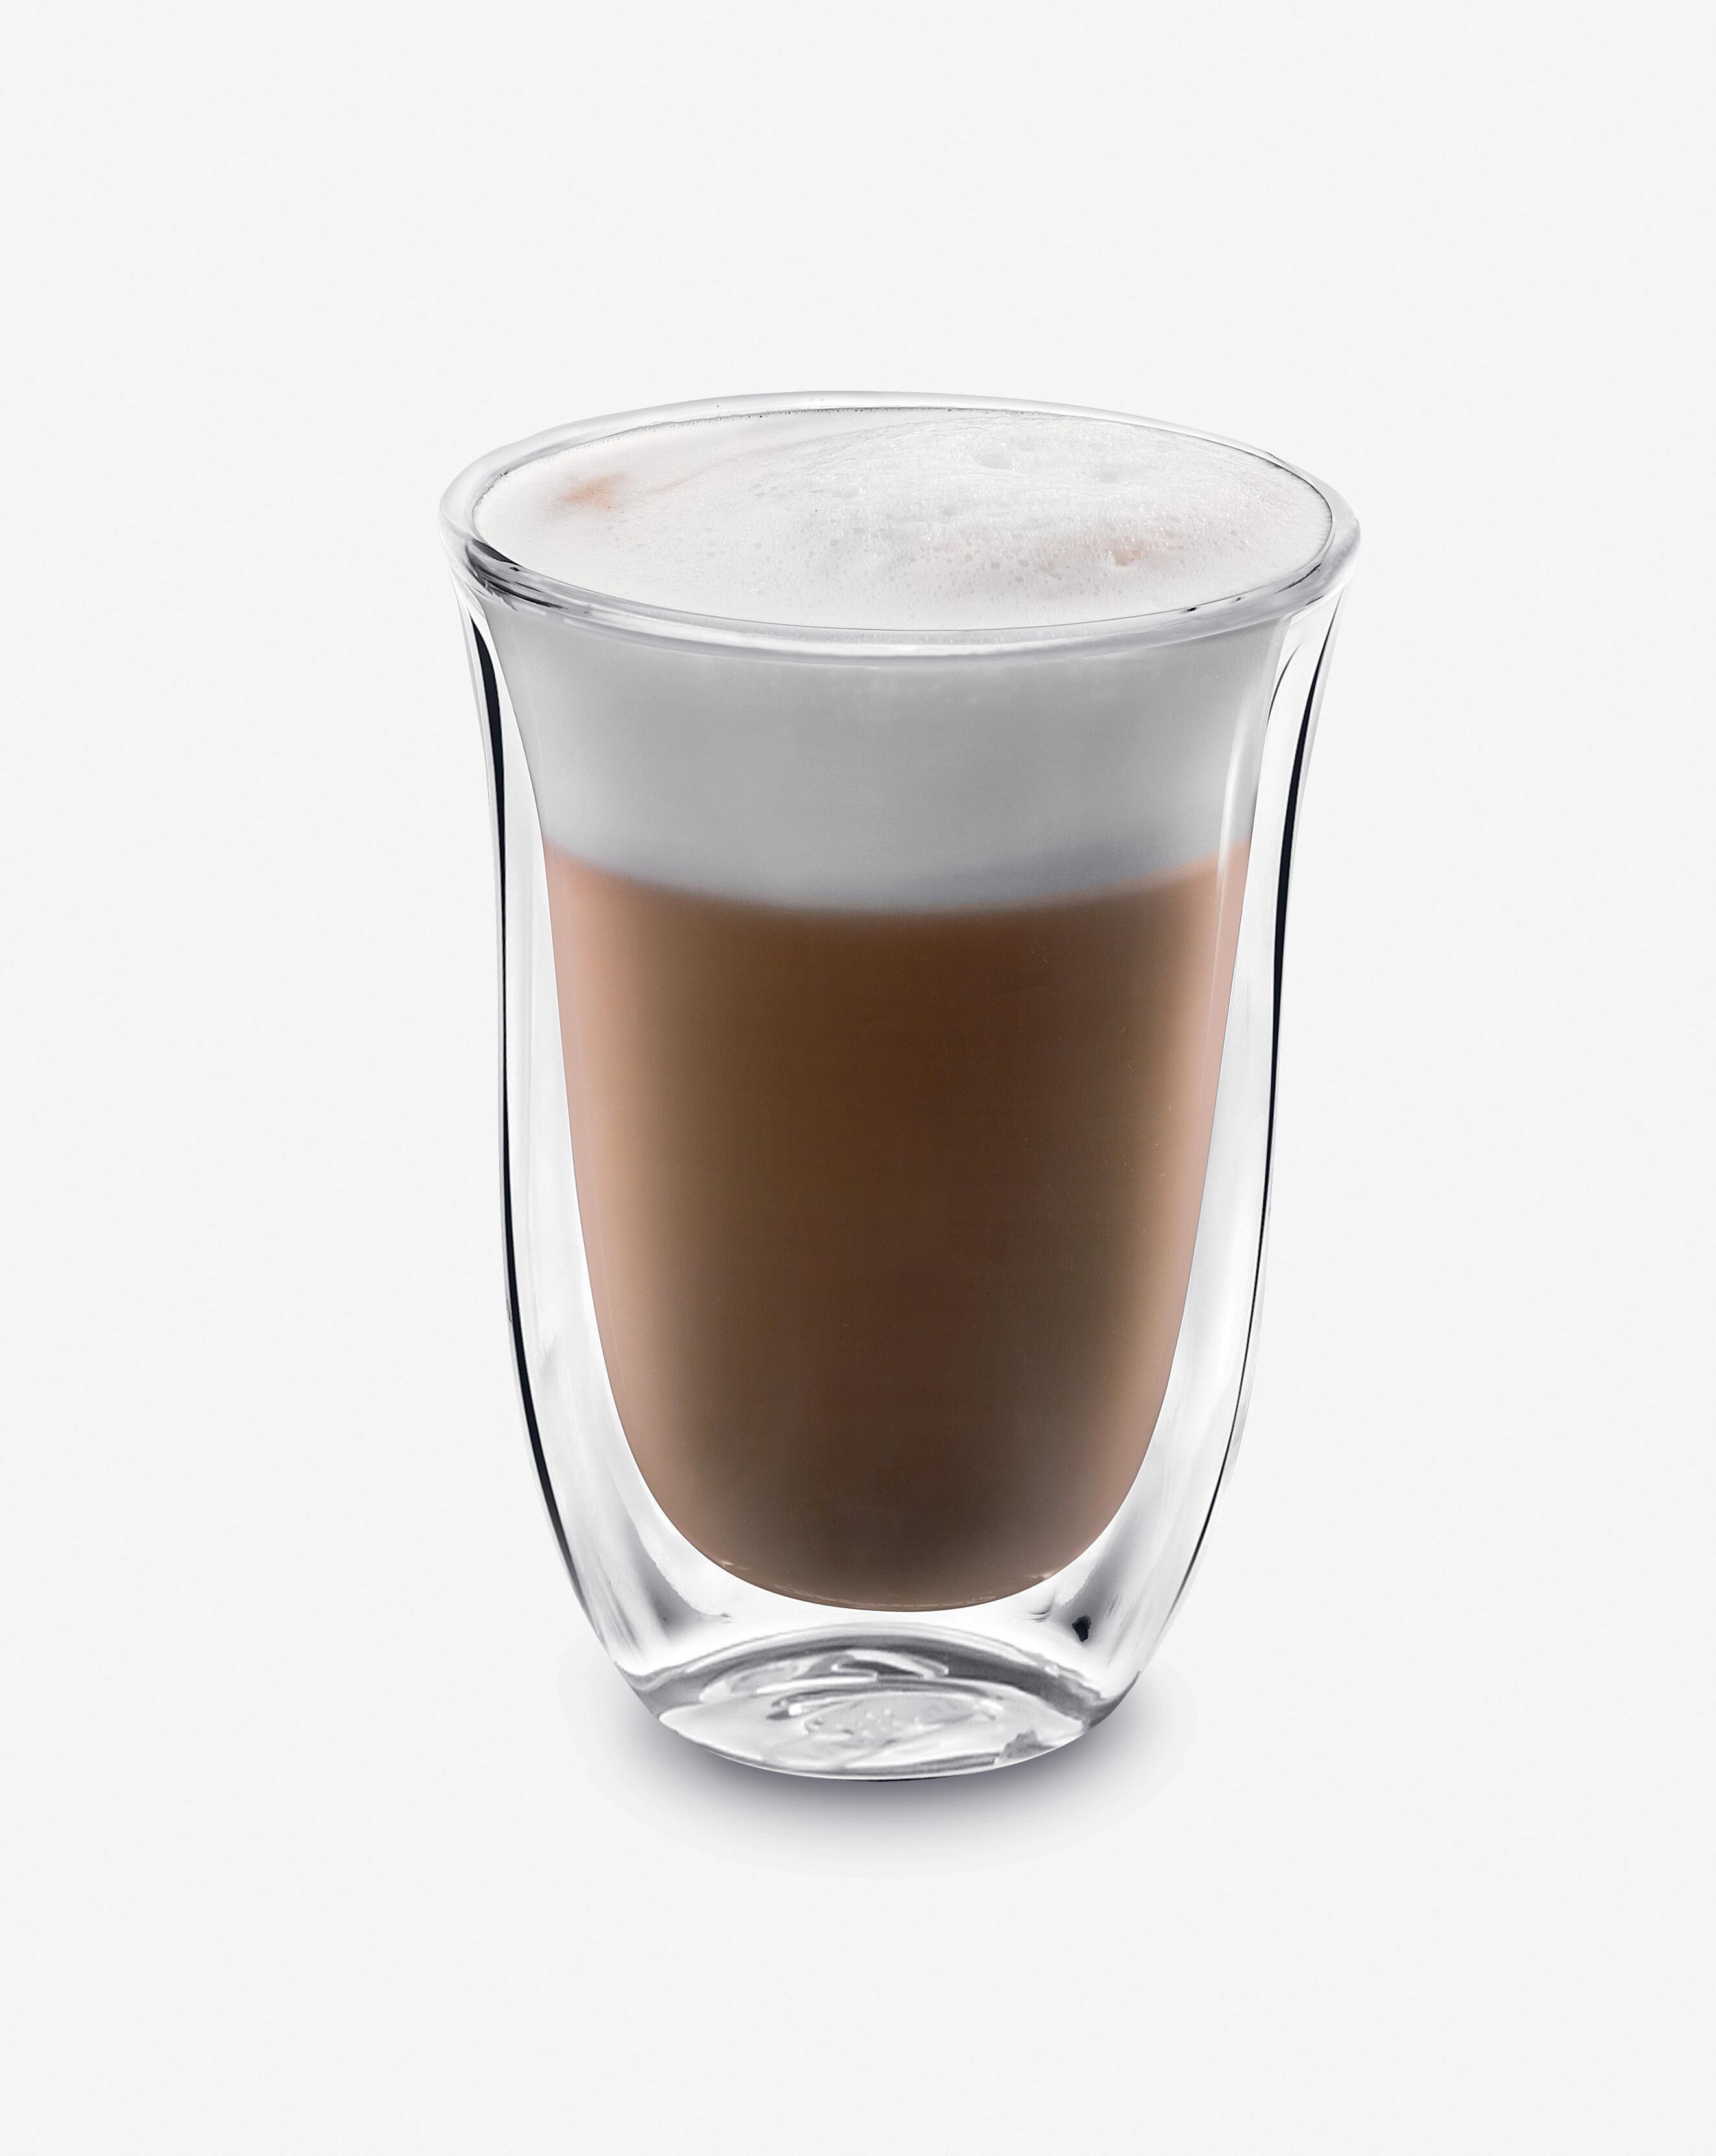 DELONGHI 2erSet Transparent Gläser DLSC312 Macchiato Latte Thermoglas